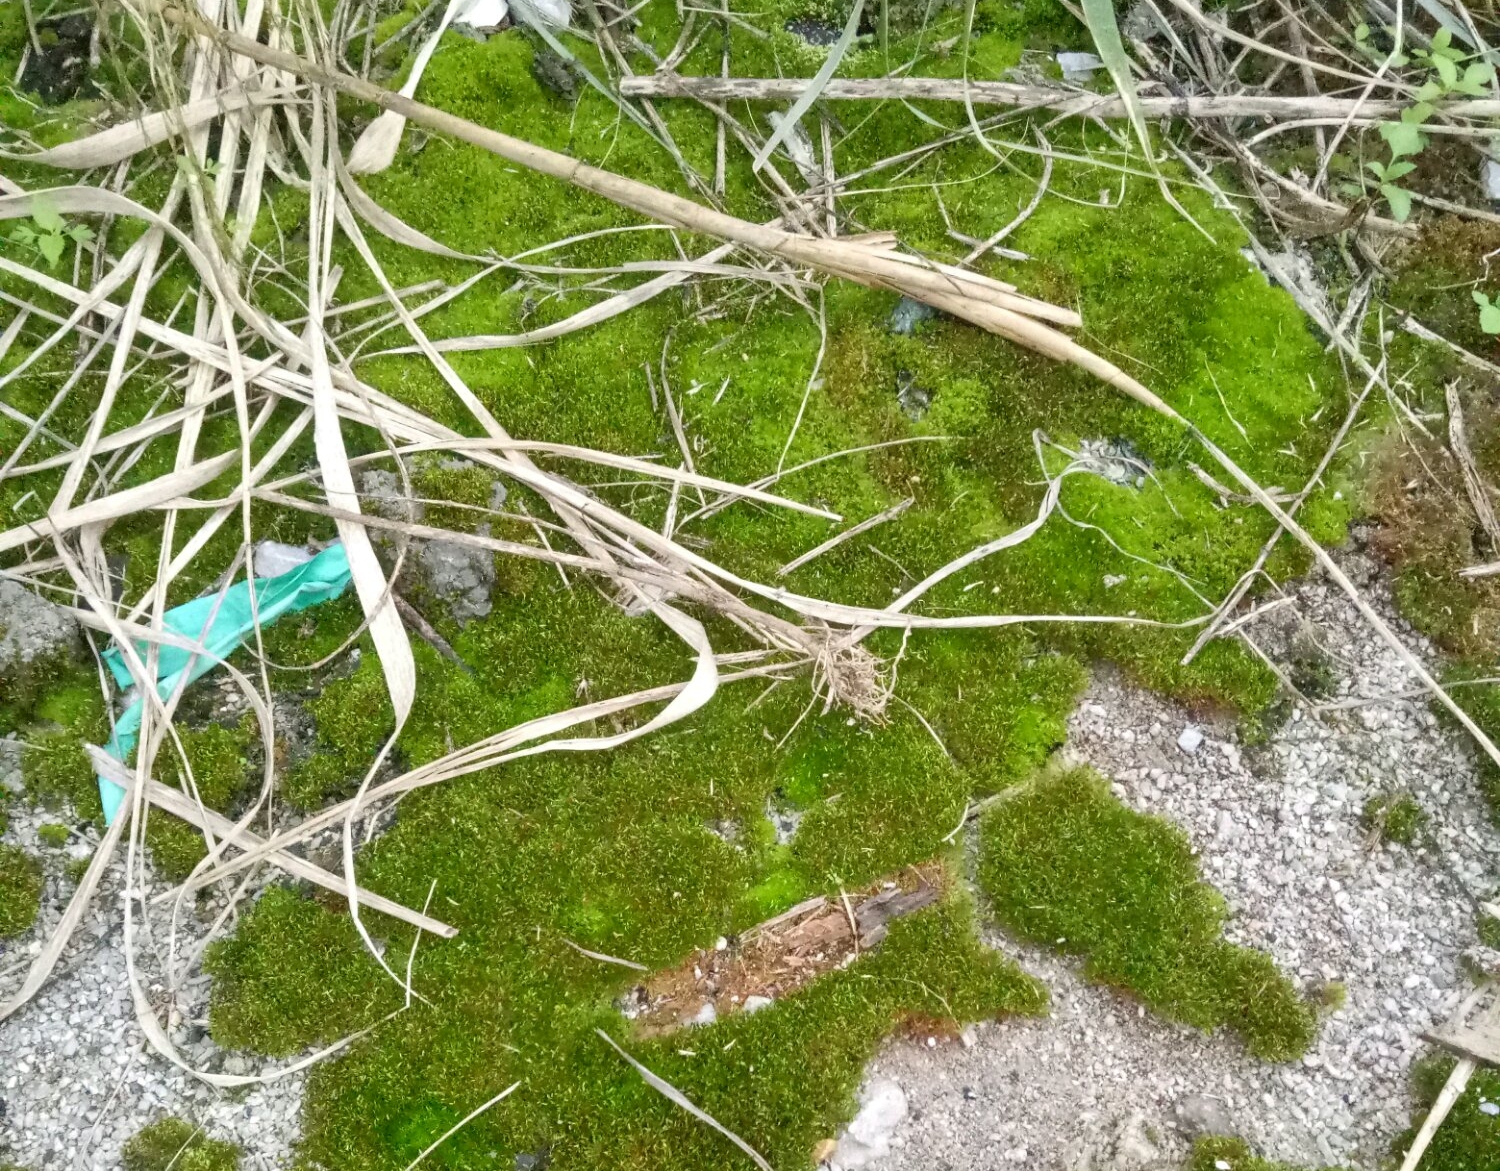 水苔和苔藓栽培蝴蝶兰有区别 自己野外采的苔藓可不可以养蝴蝶兰 佳辰